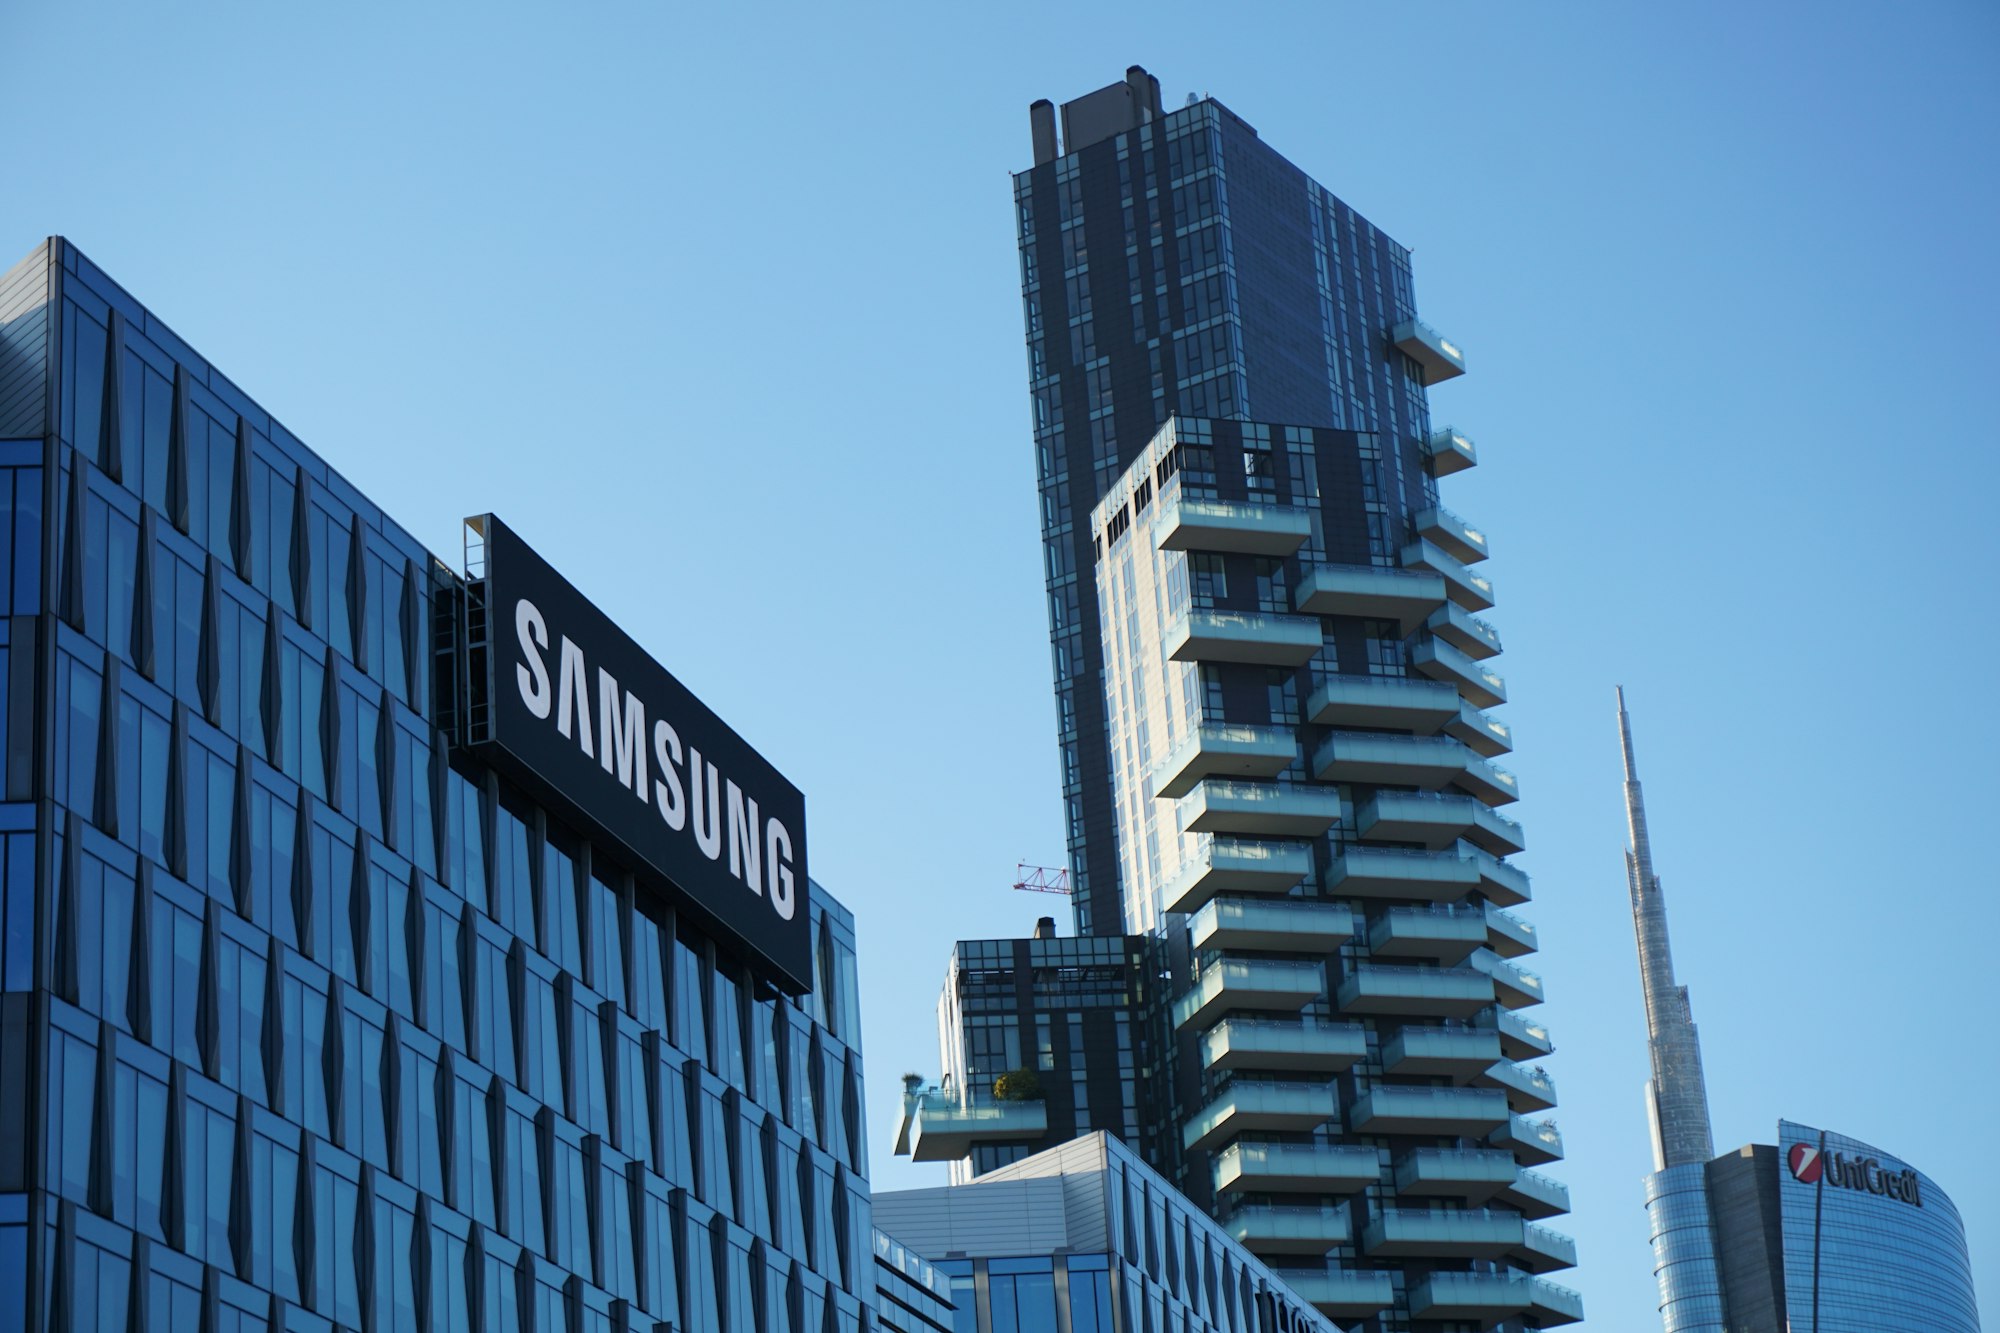 Logo de Samsung en la fachada de un edificio.